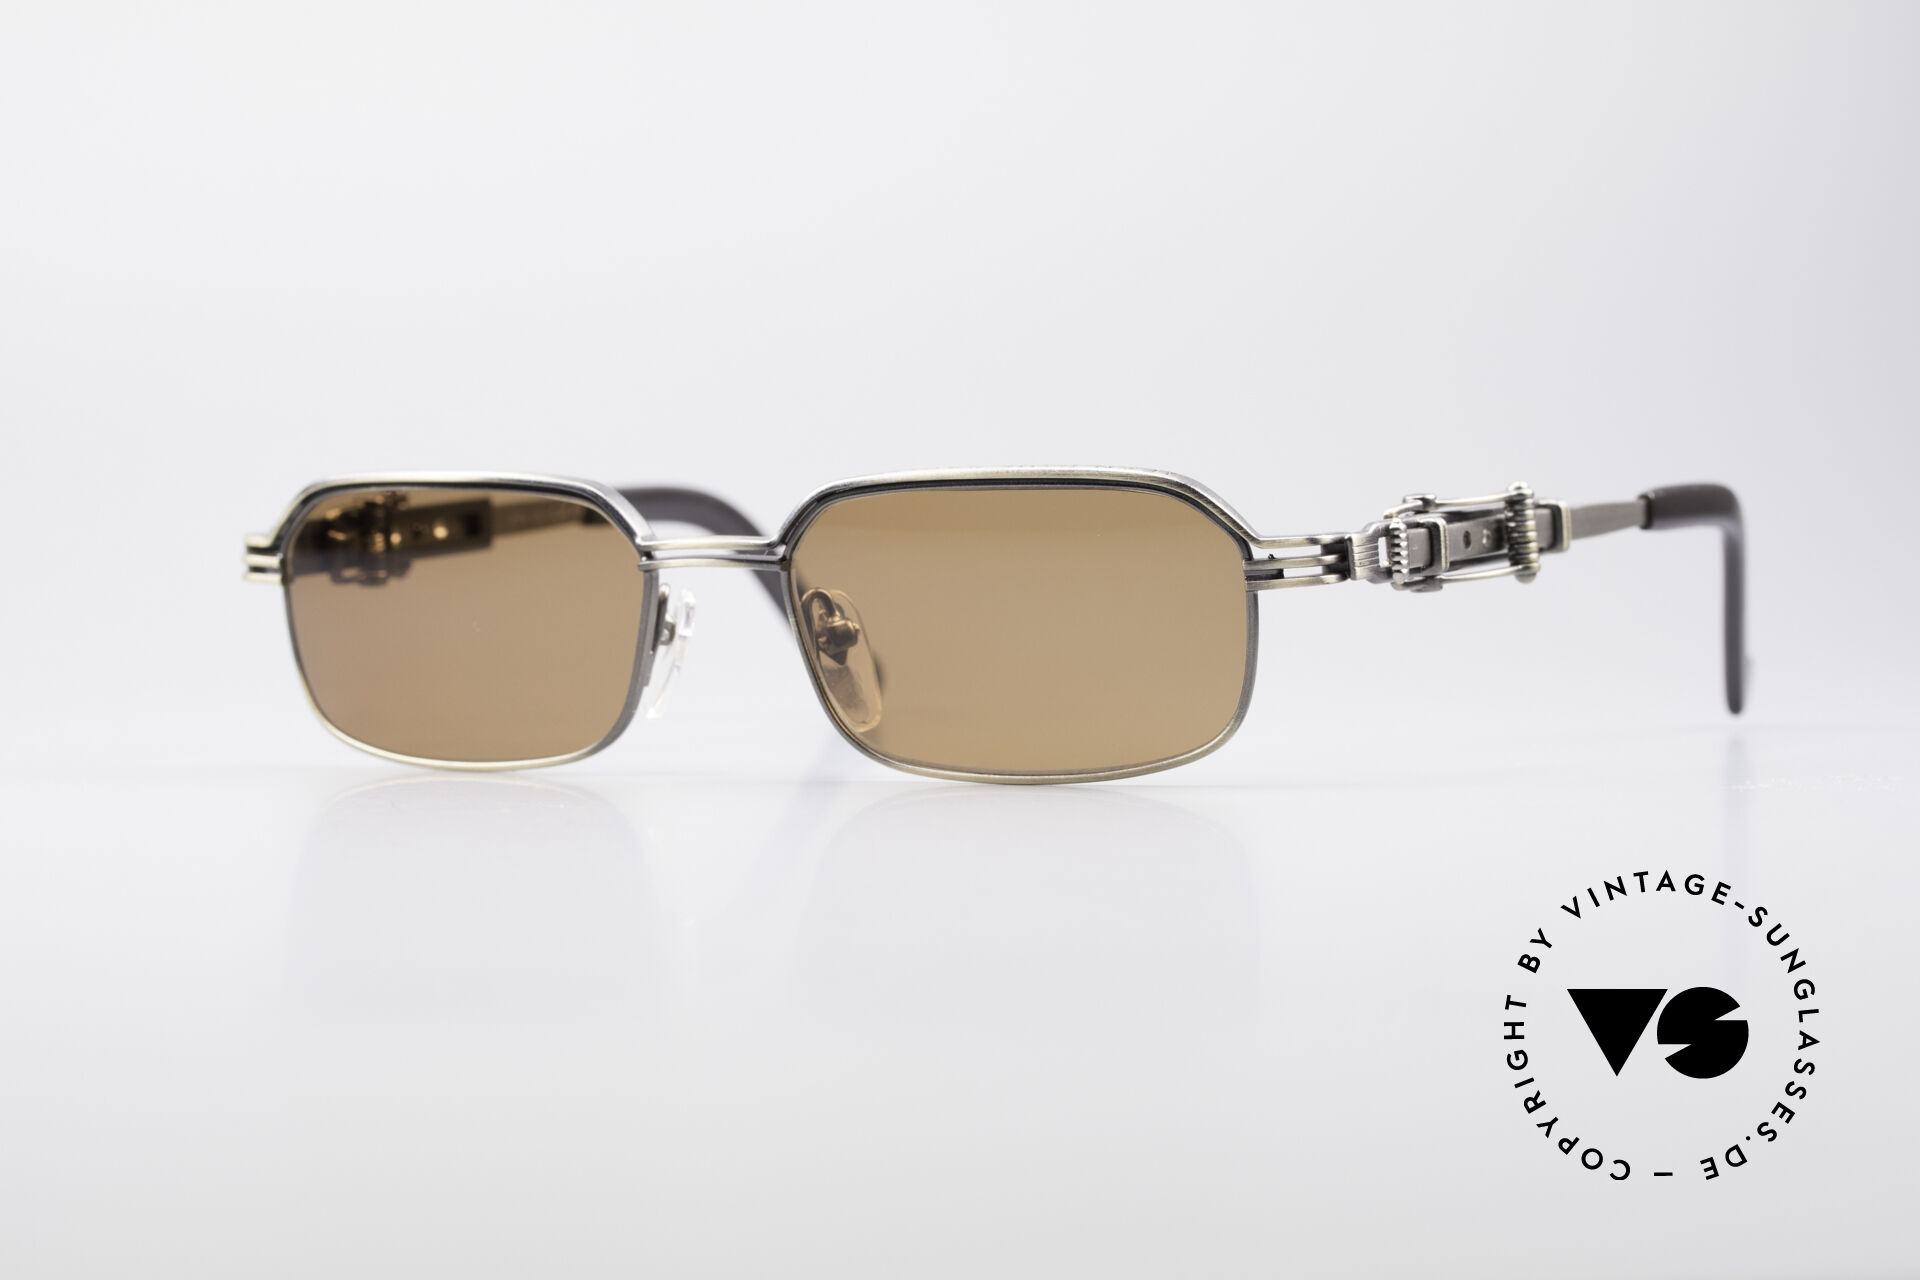 Sunglasses Jean Paul Gaultier 56-0002 Adjustable Frame Belt Buckle